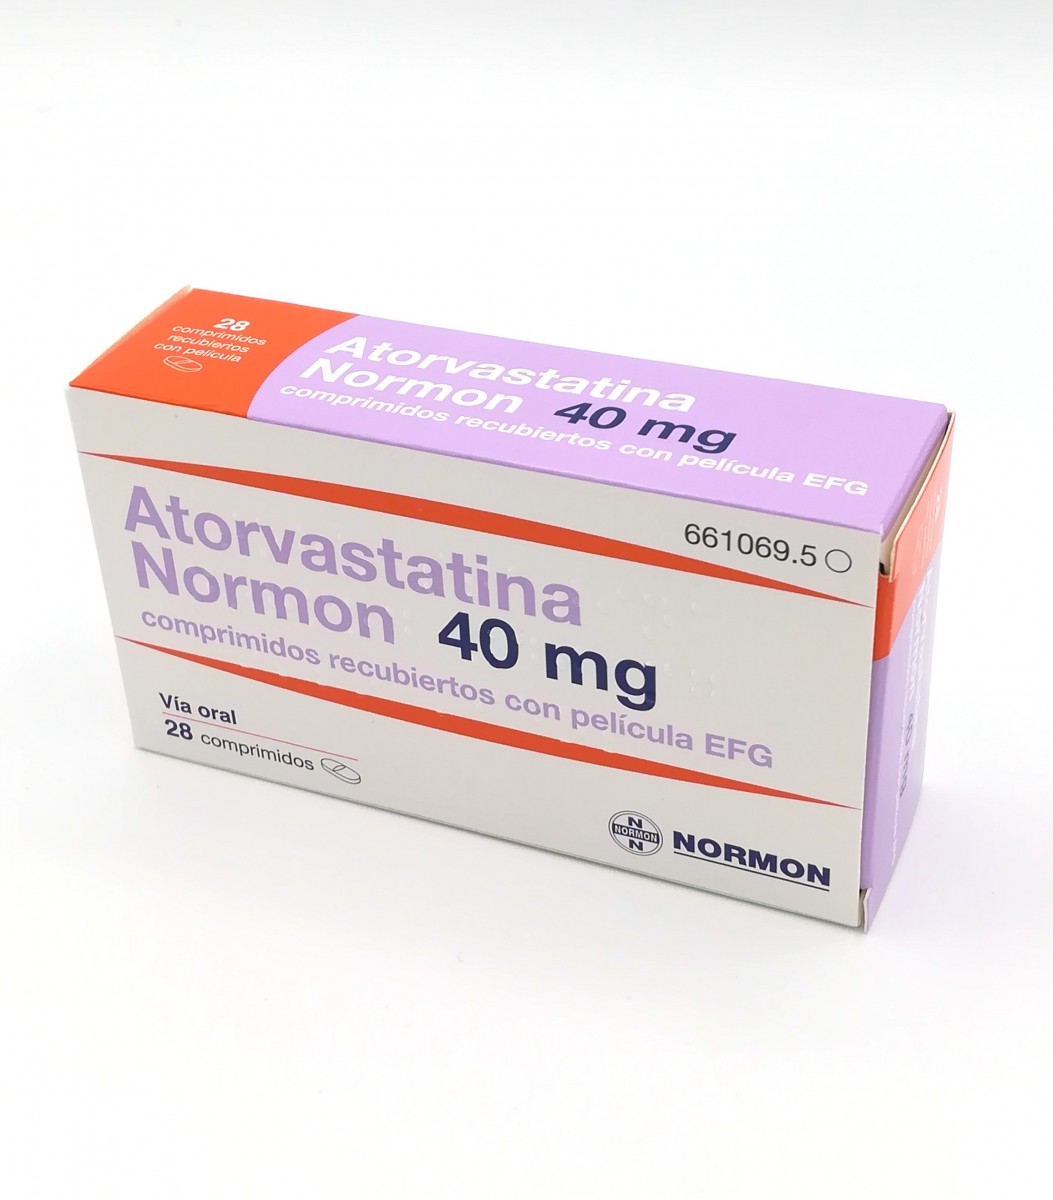 ATORVASTATINA NORMON 40 mg COMPRIMIDOS RECUBIERTOS CON PELICULA EFG , 500 comprimidos fotografía del envase.